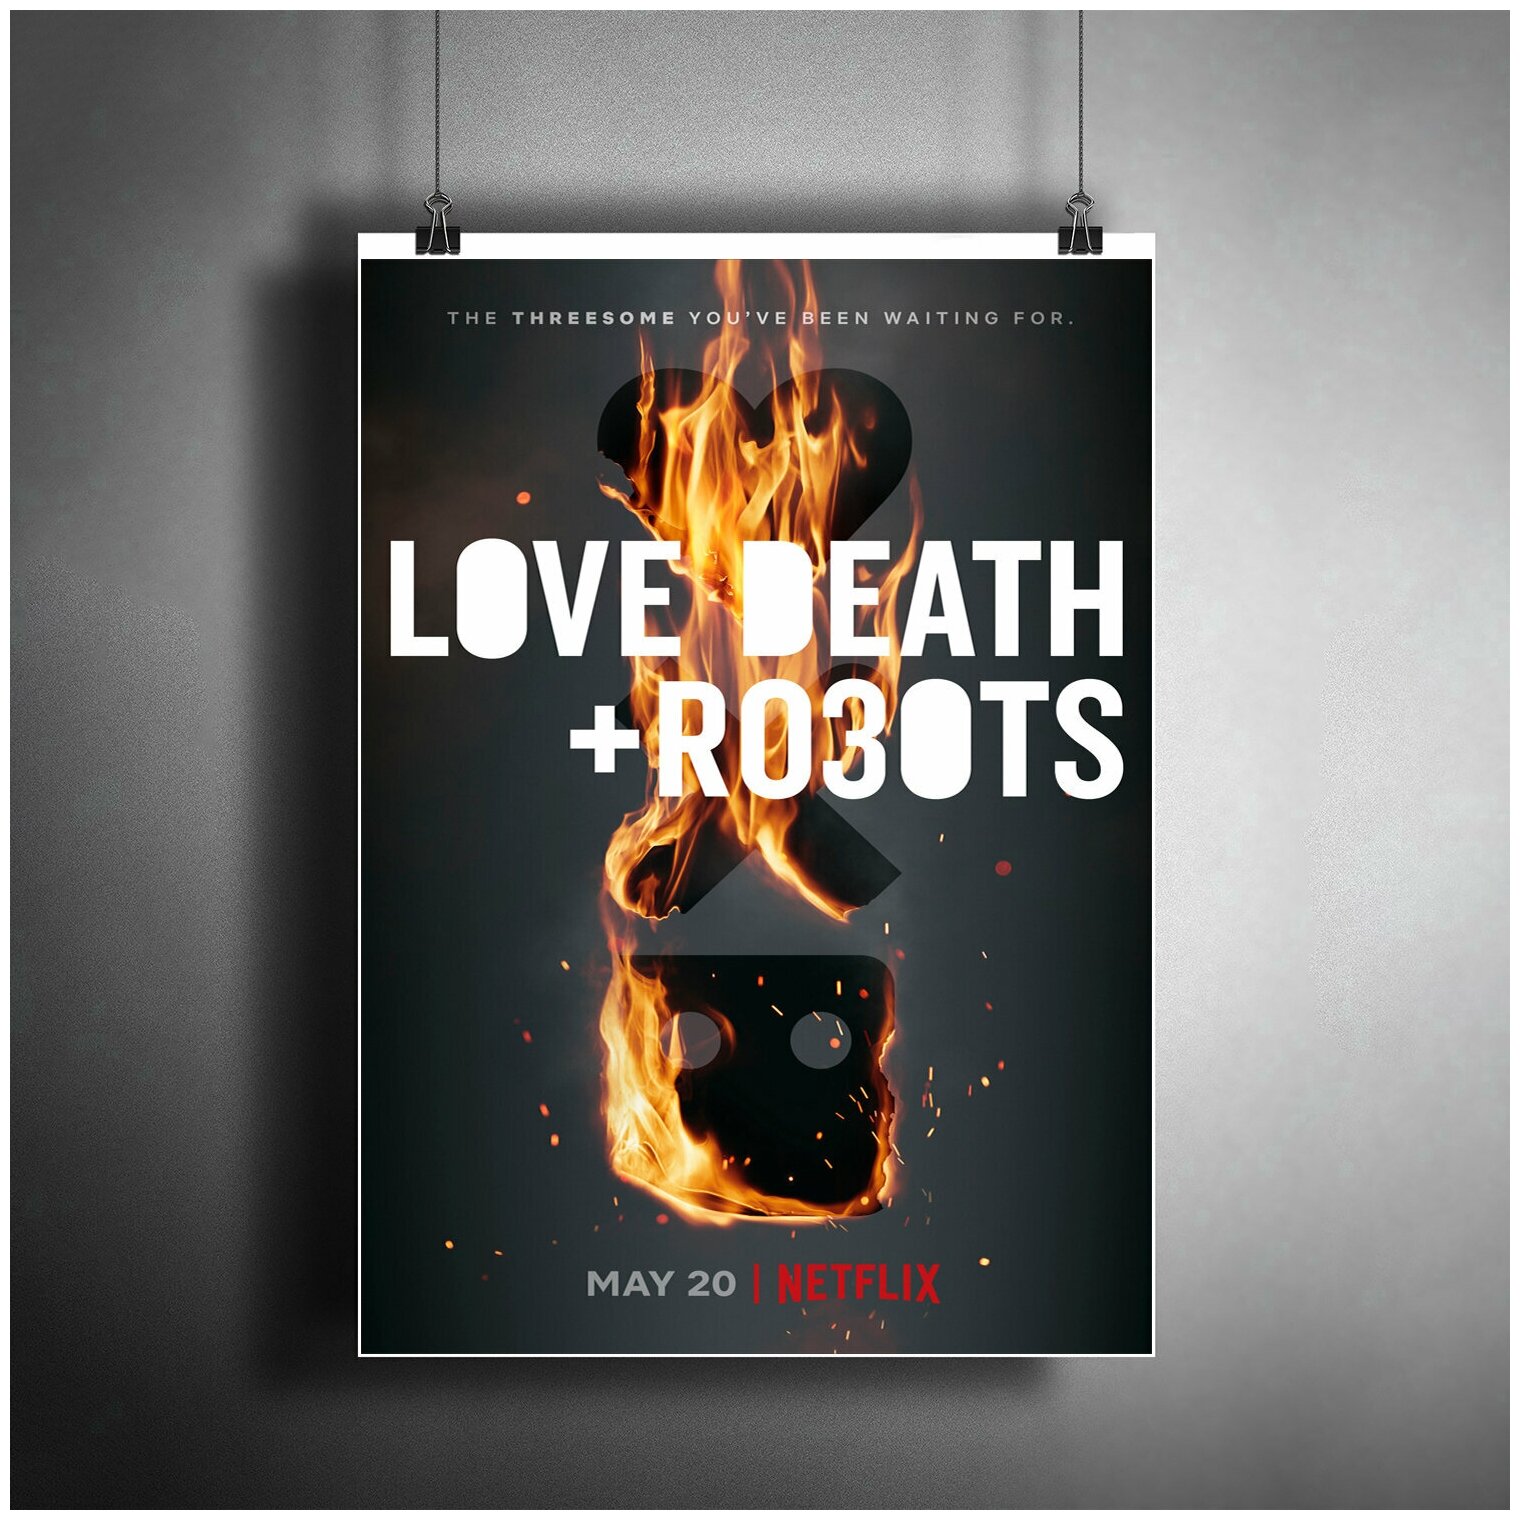 Постер плакат для интерьера "Мультсериал: Любовь. Смерть. Роботы 3. Love, Death & Robots 3" / Декор дома, офиса, комнаты, квартиры A3 (297 x 420 мм)